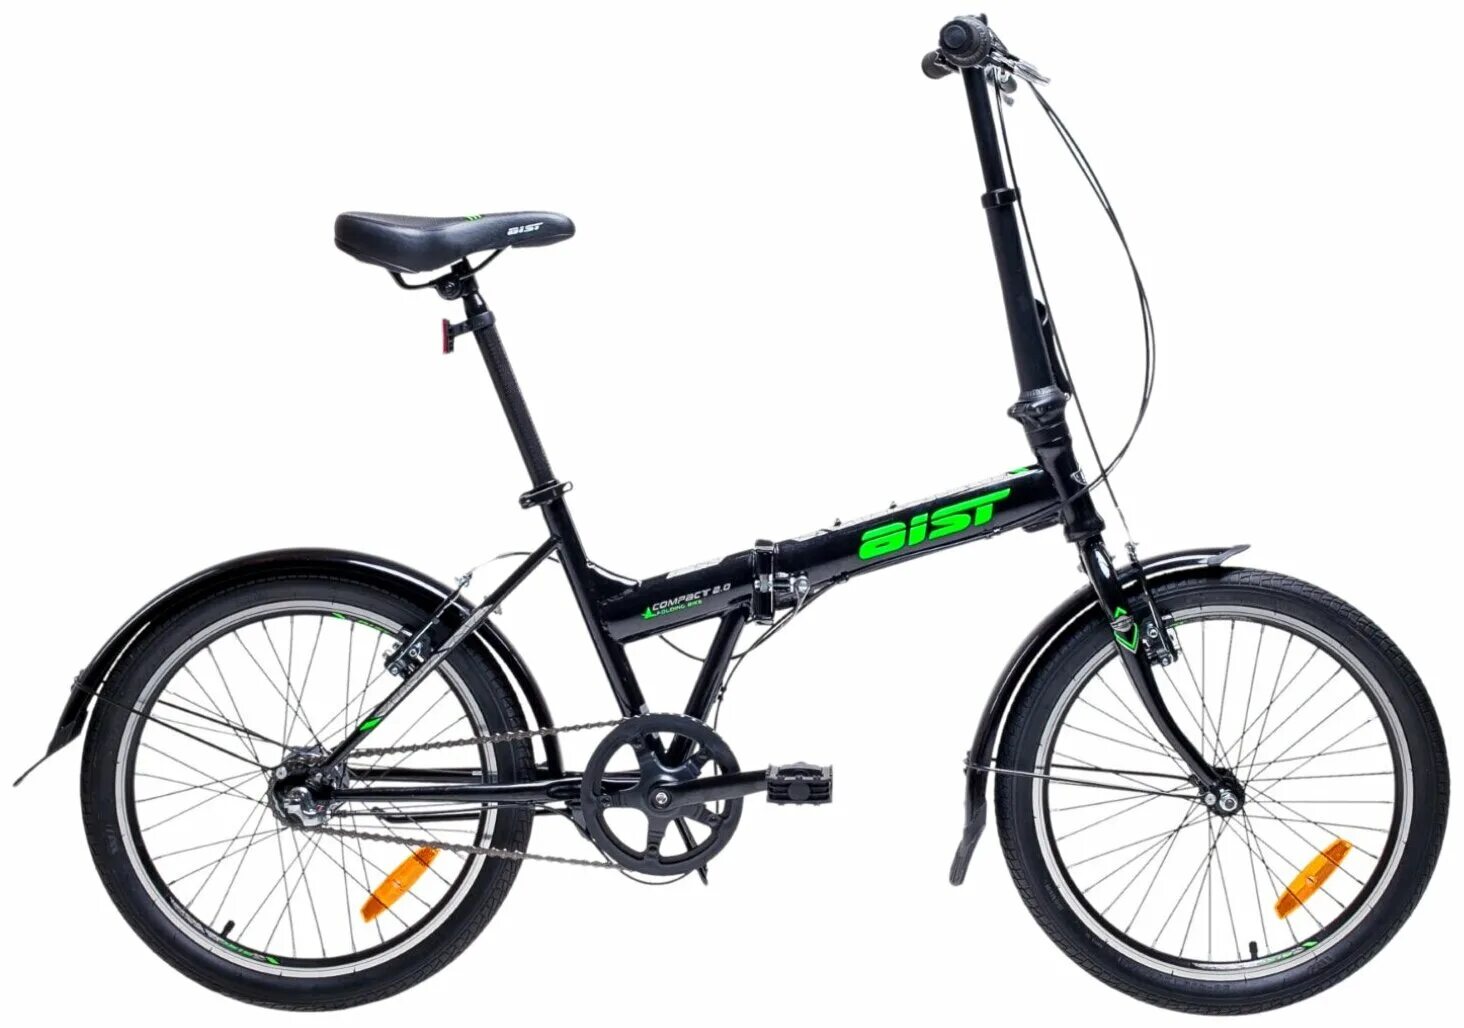 Купить велосипед аист в минске. Aist Compact 2.0. Велосипед Аист 20 дюймов. Аист-2016 велосипед. Аист 2.0 велосипед.